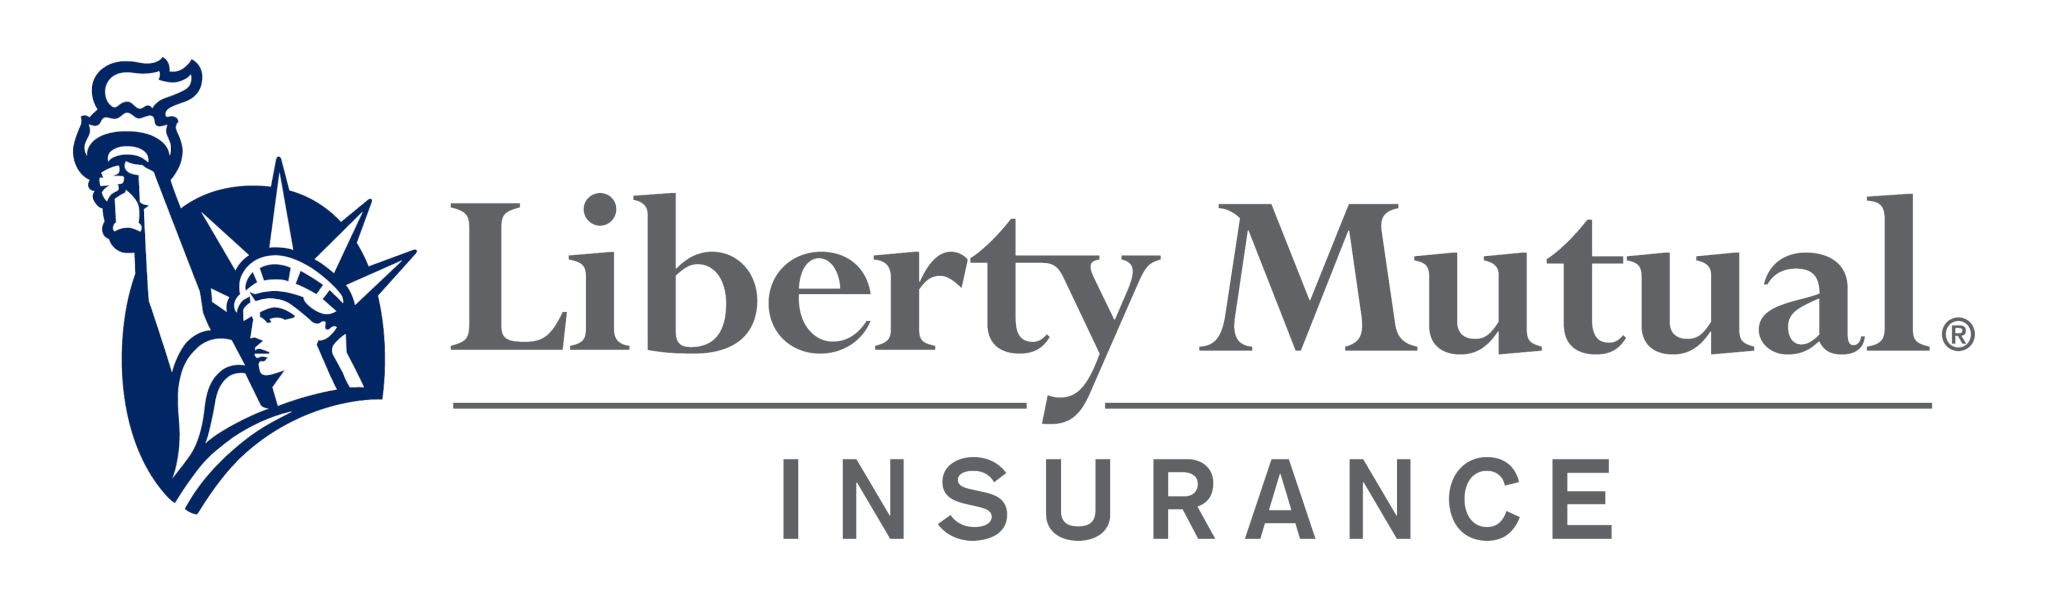 pngpix-com-liberty-mutual-insurance-logo-png-transparent_orig.png